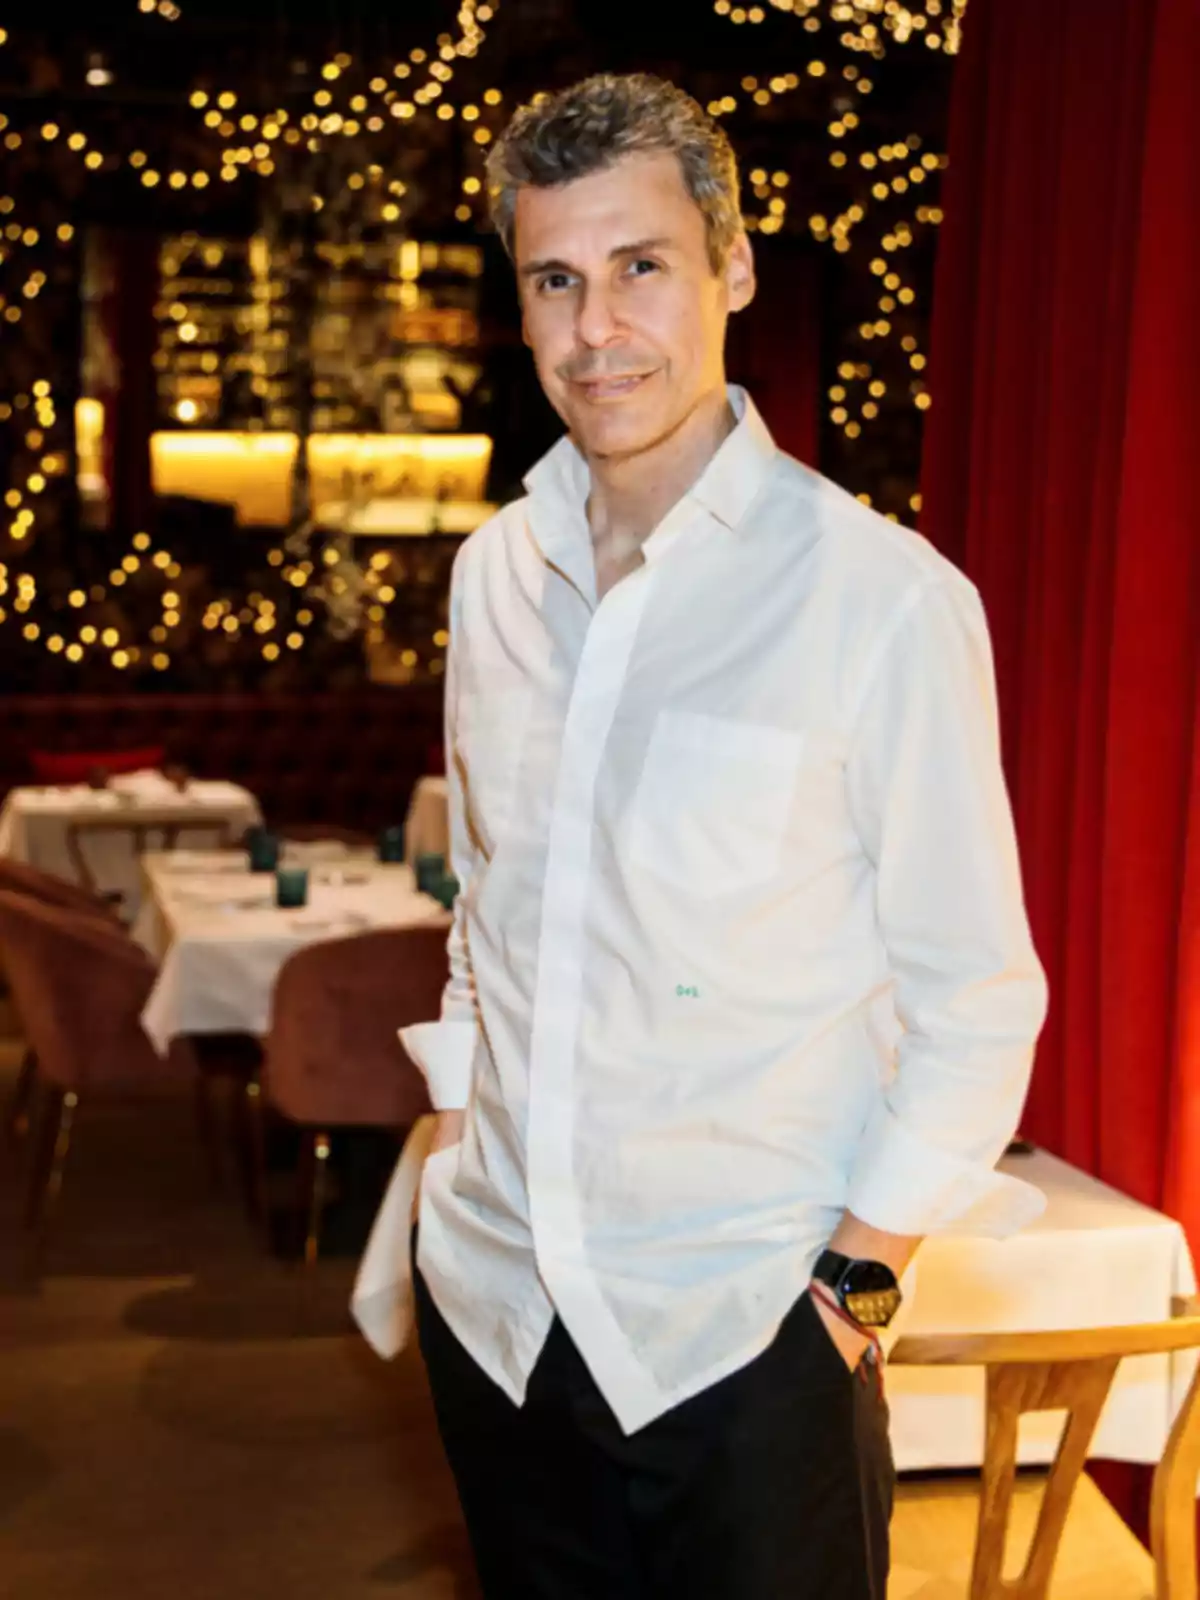 Un hombre con camisa blanca y reloj negro posa en un restaurante decorado con luces.